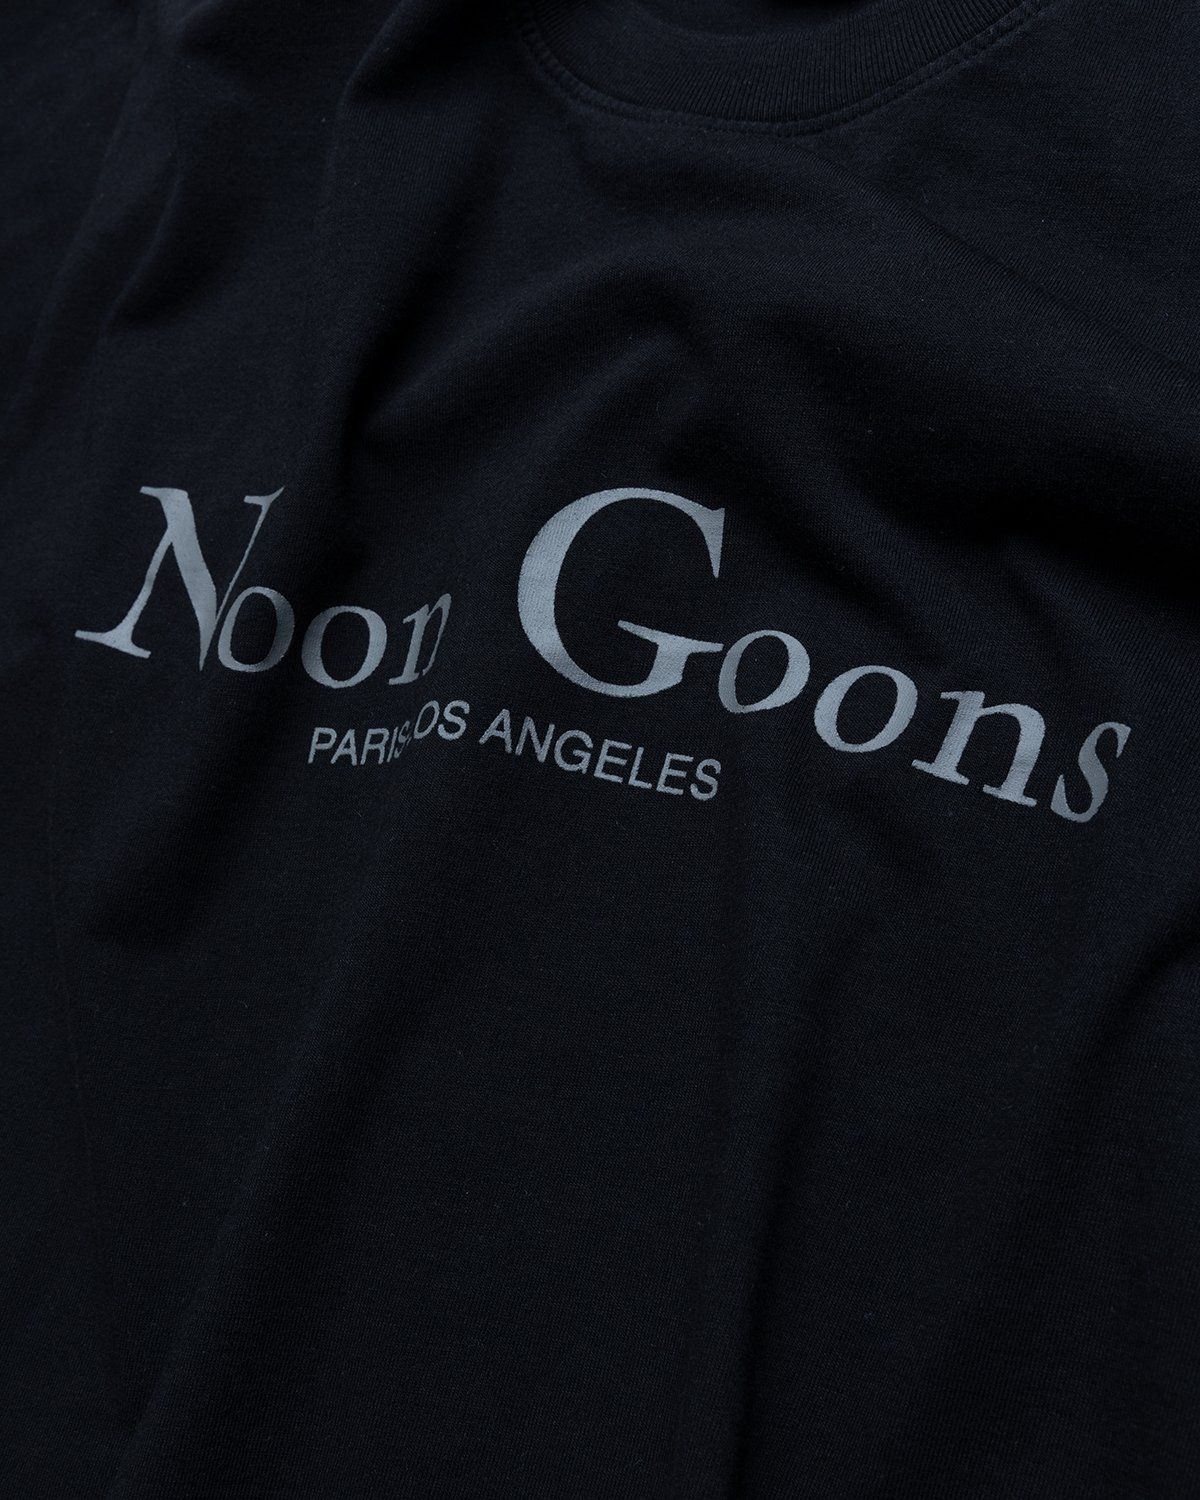 Noon Goons – Sister City T-Shirt Black - Tops - Black - Image 4